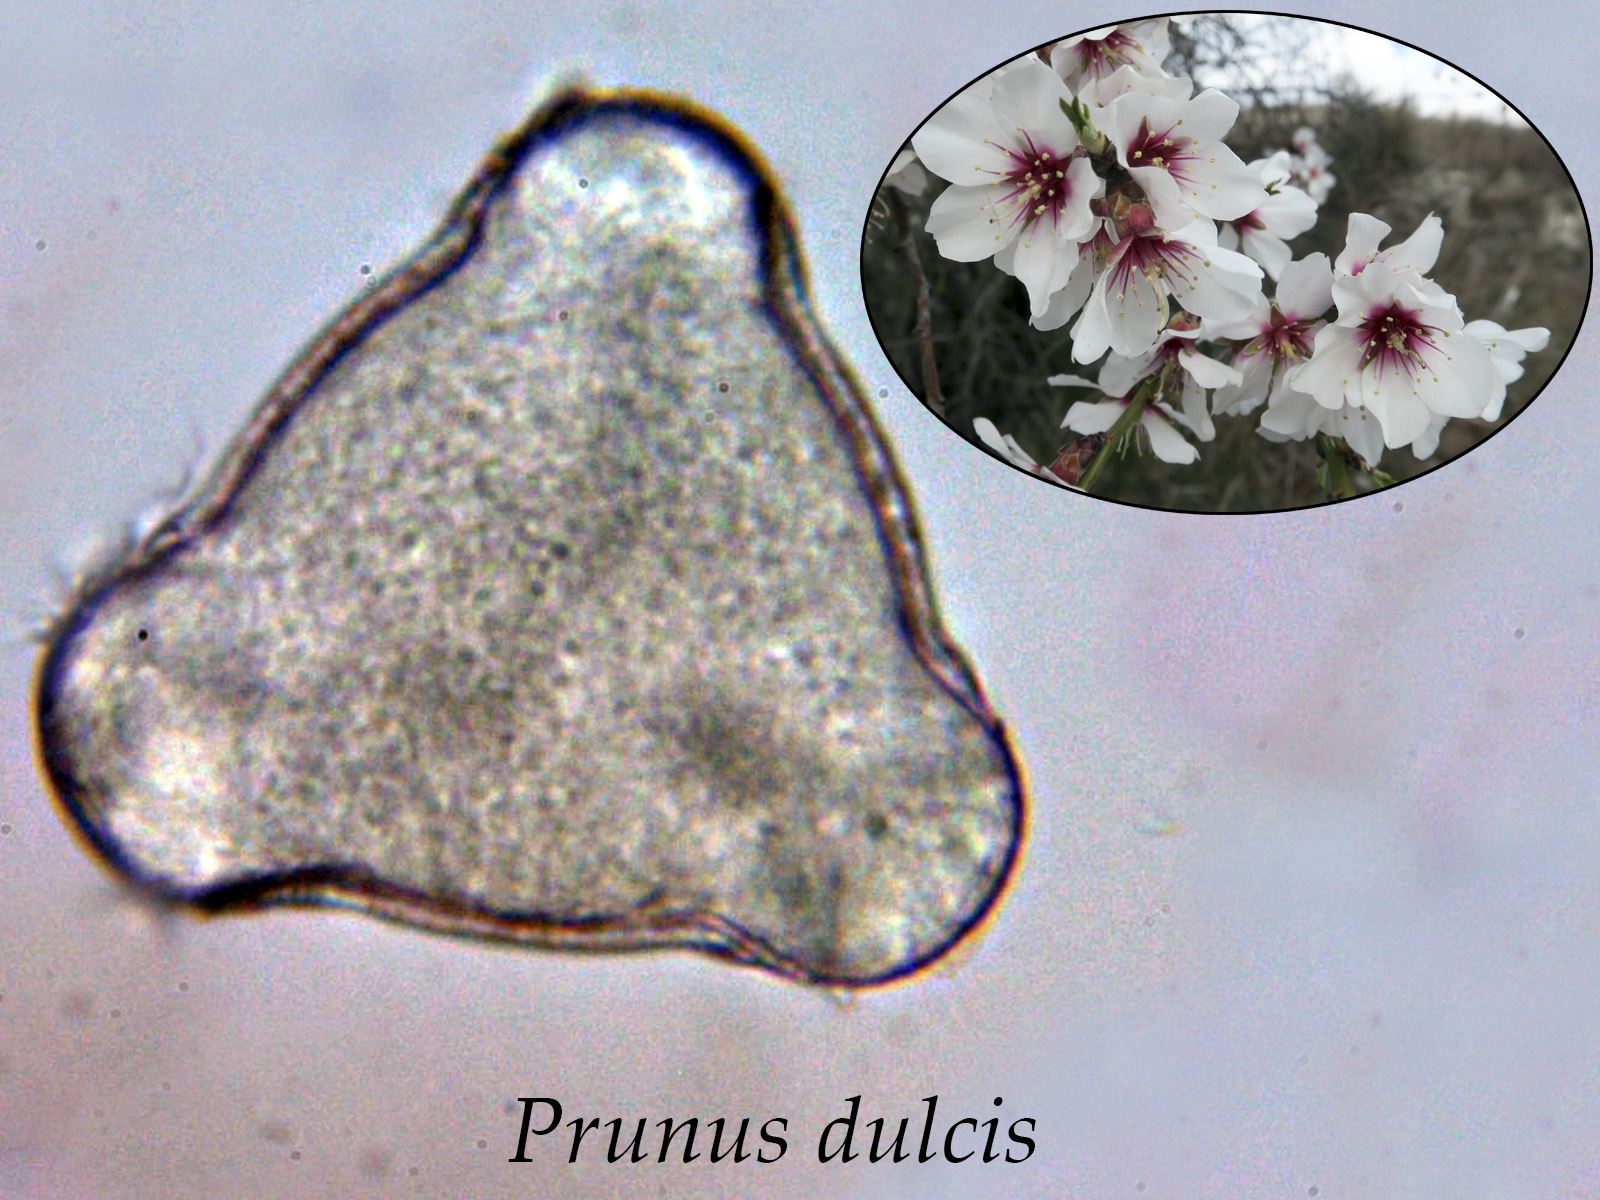 Prunusdulcis.jpg